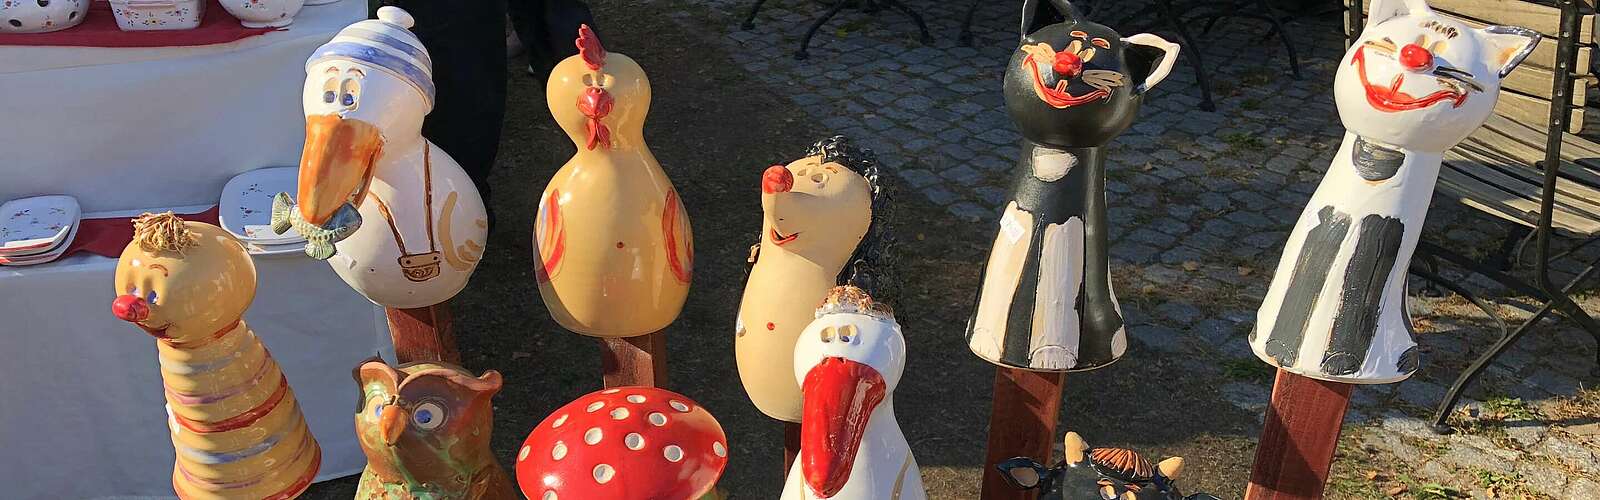 Keramikmarkt,
        
    

        Foto: Tourismusverband Dahme-Seen e.V./Petra Förster